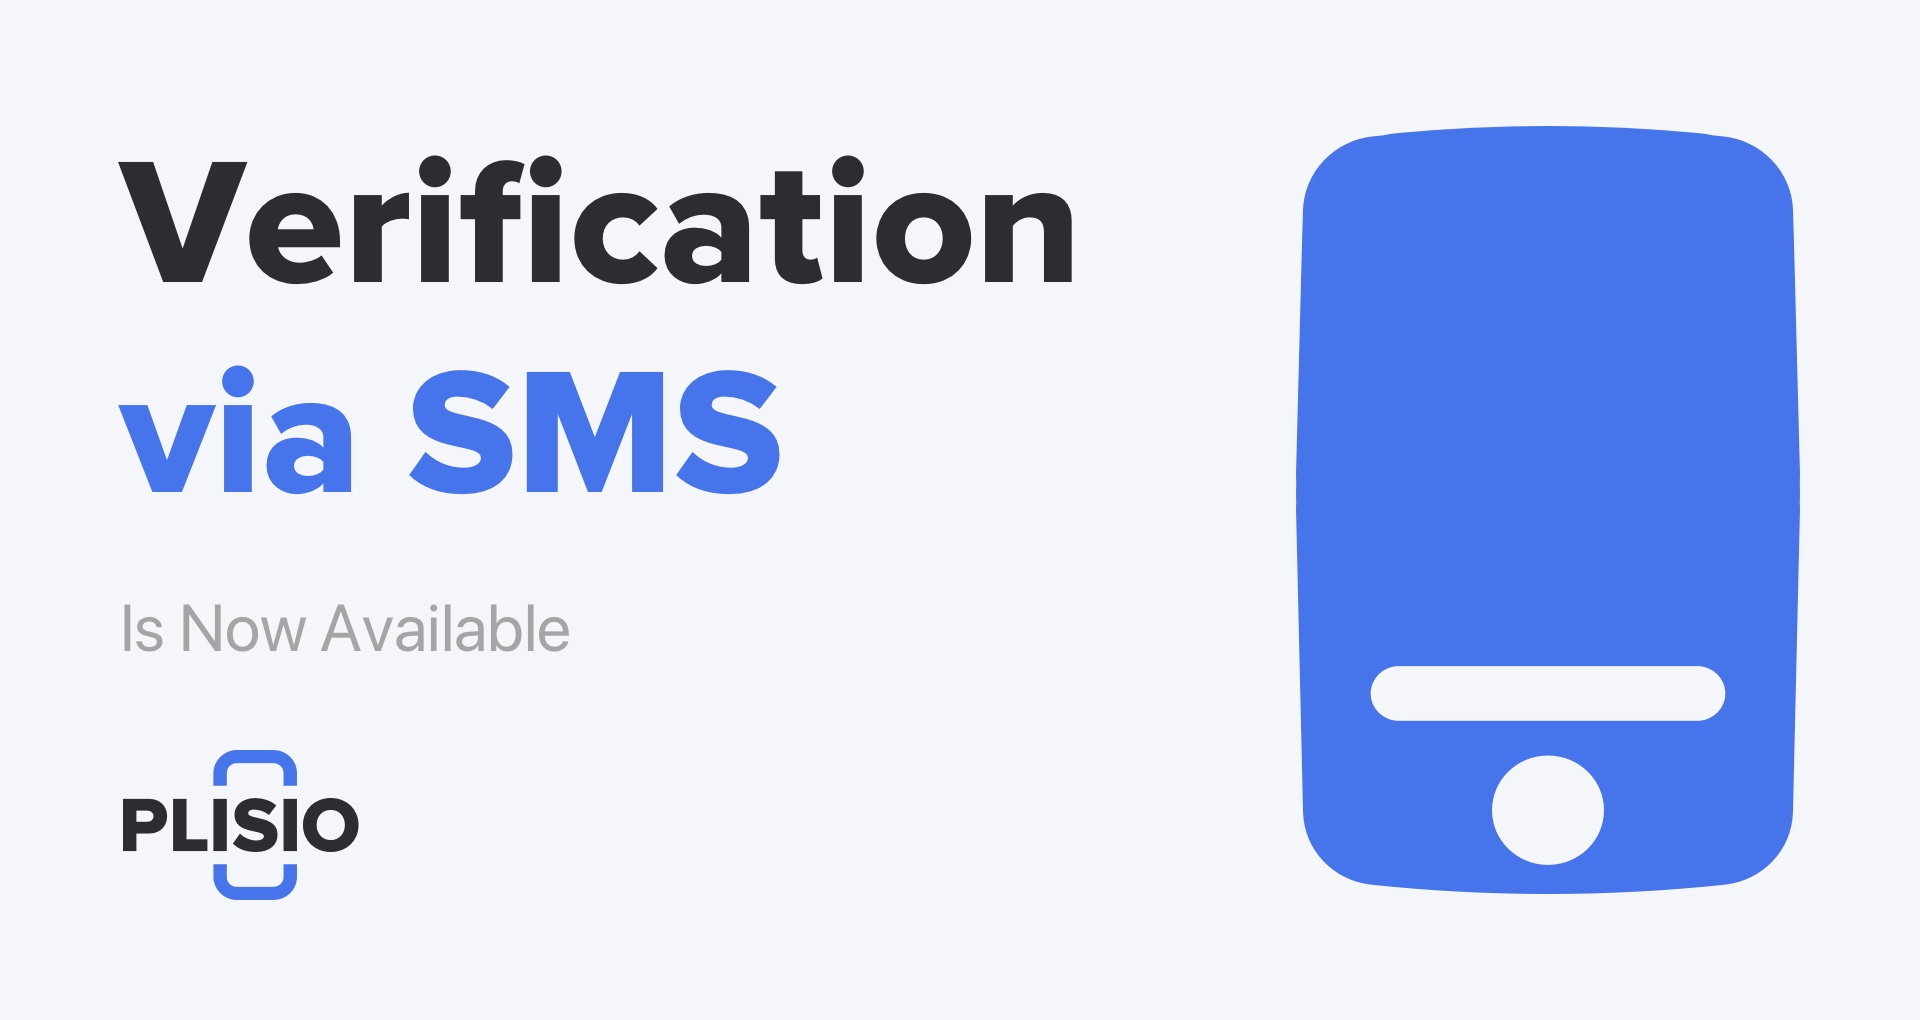 La vérification par SMS est maintenant disponible. Mettez à jour vos paramètres de sécurité !